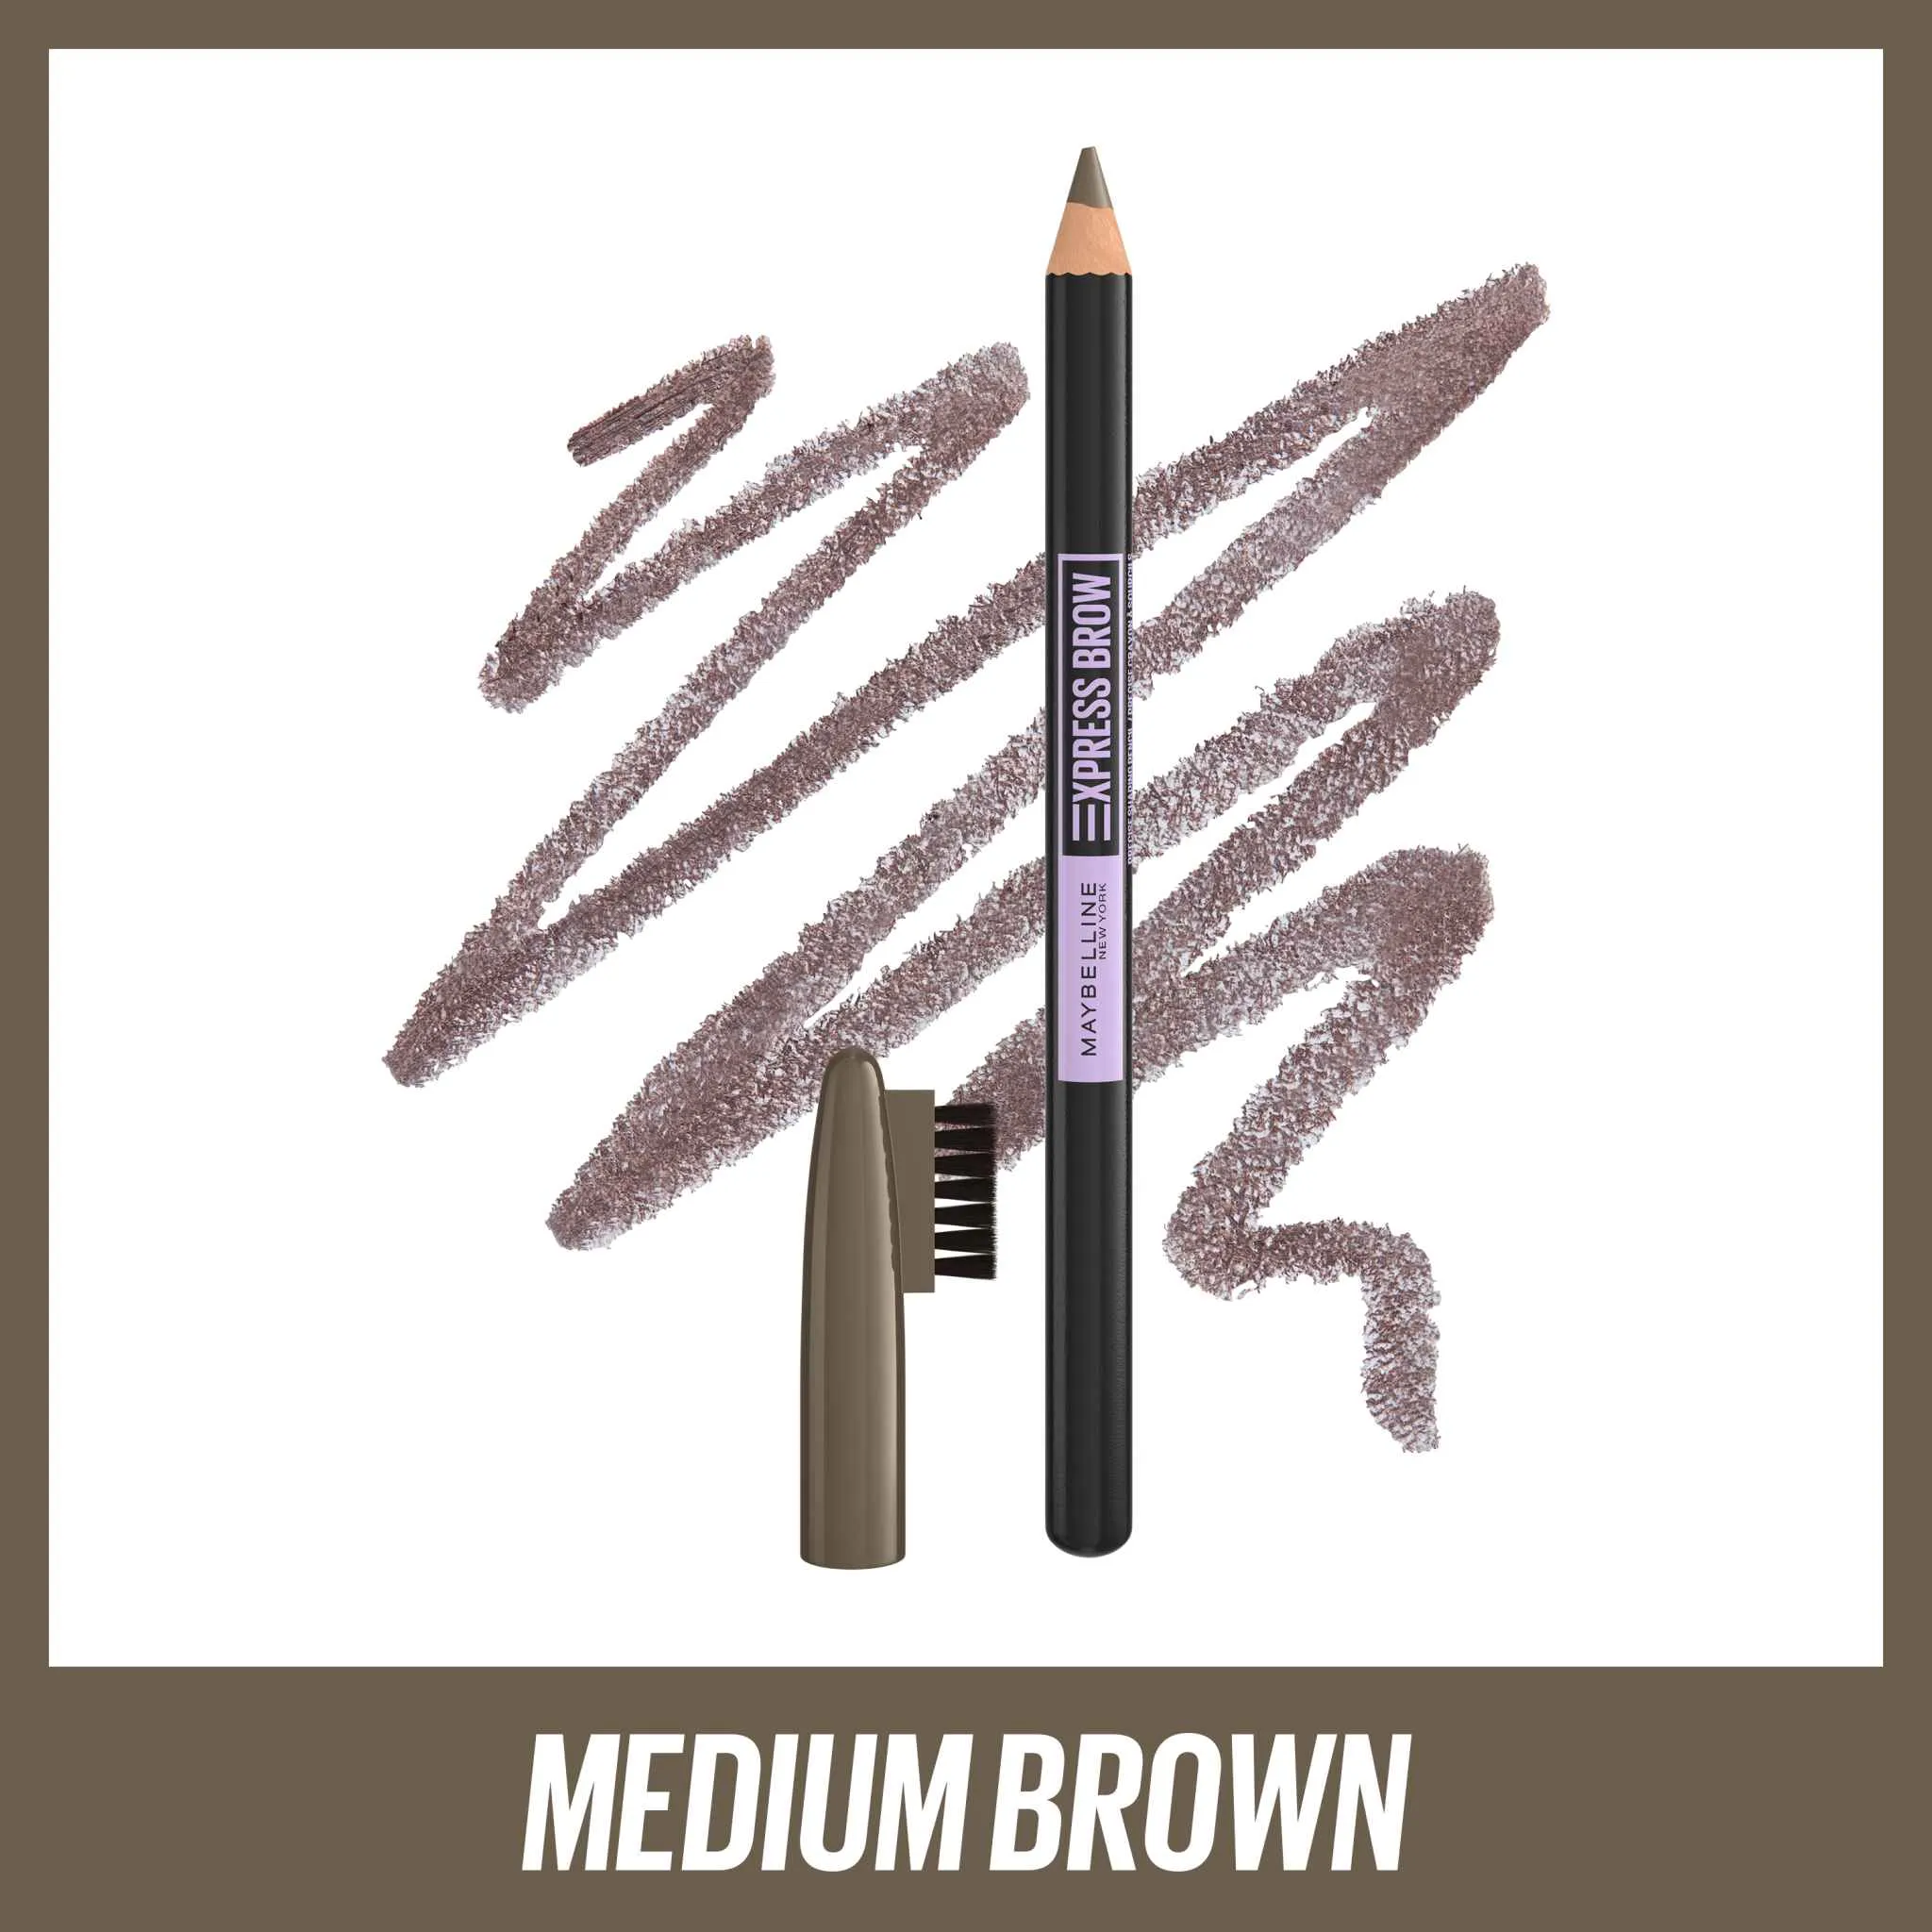 Maybelline New York Express Brow Shaping Pencil 04 Medium Brown 1×1 kus, gélová ceruzka na obočie